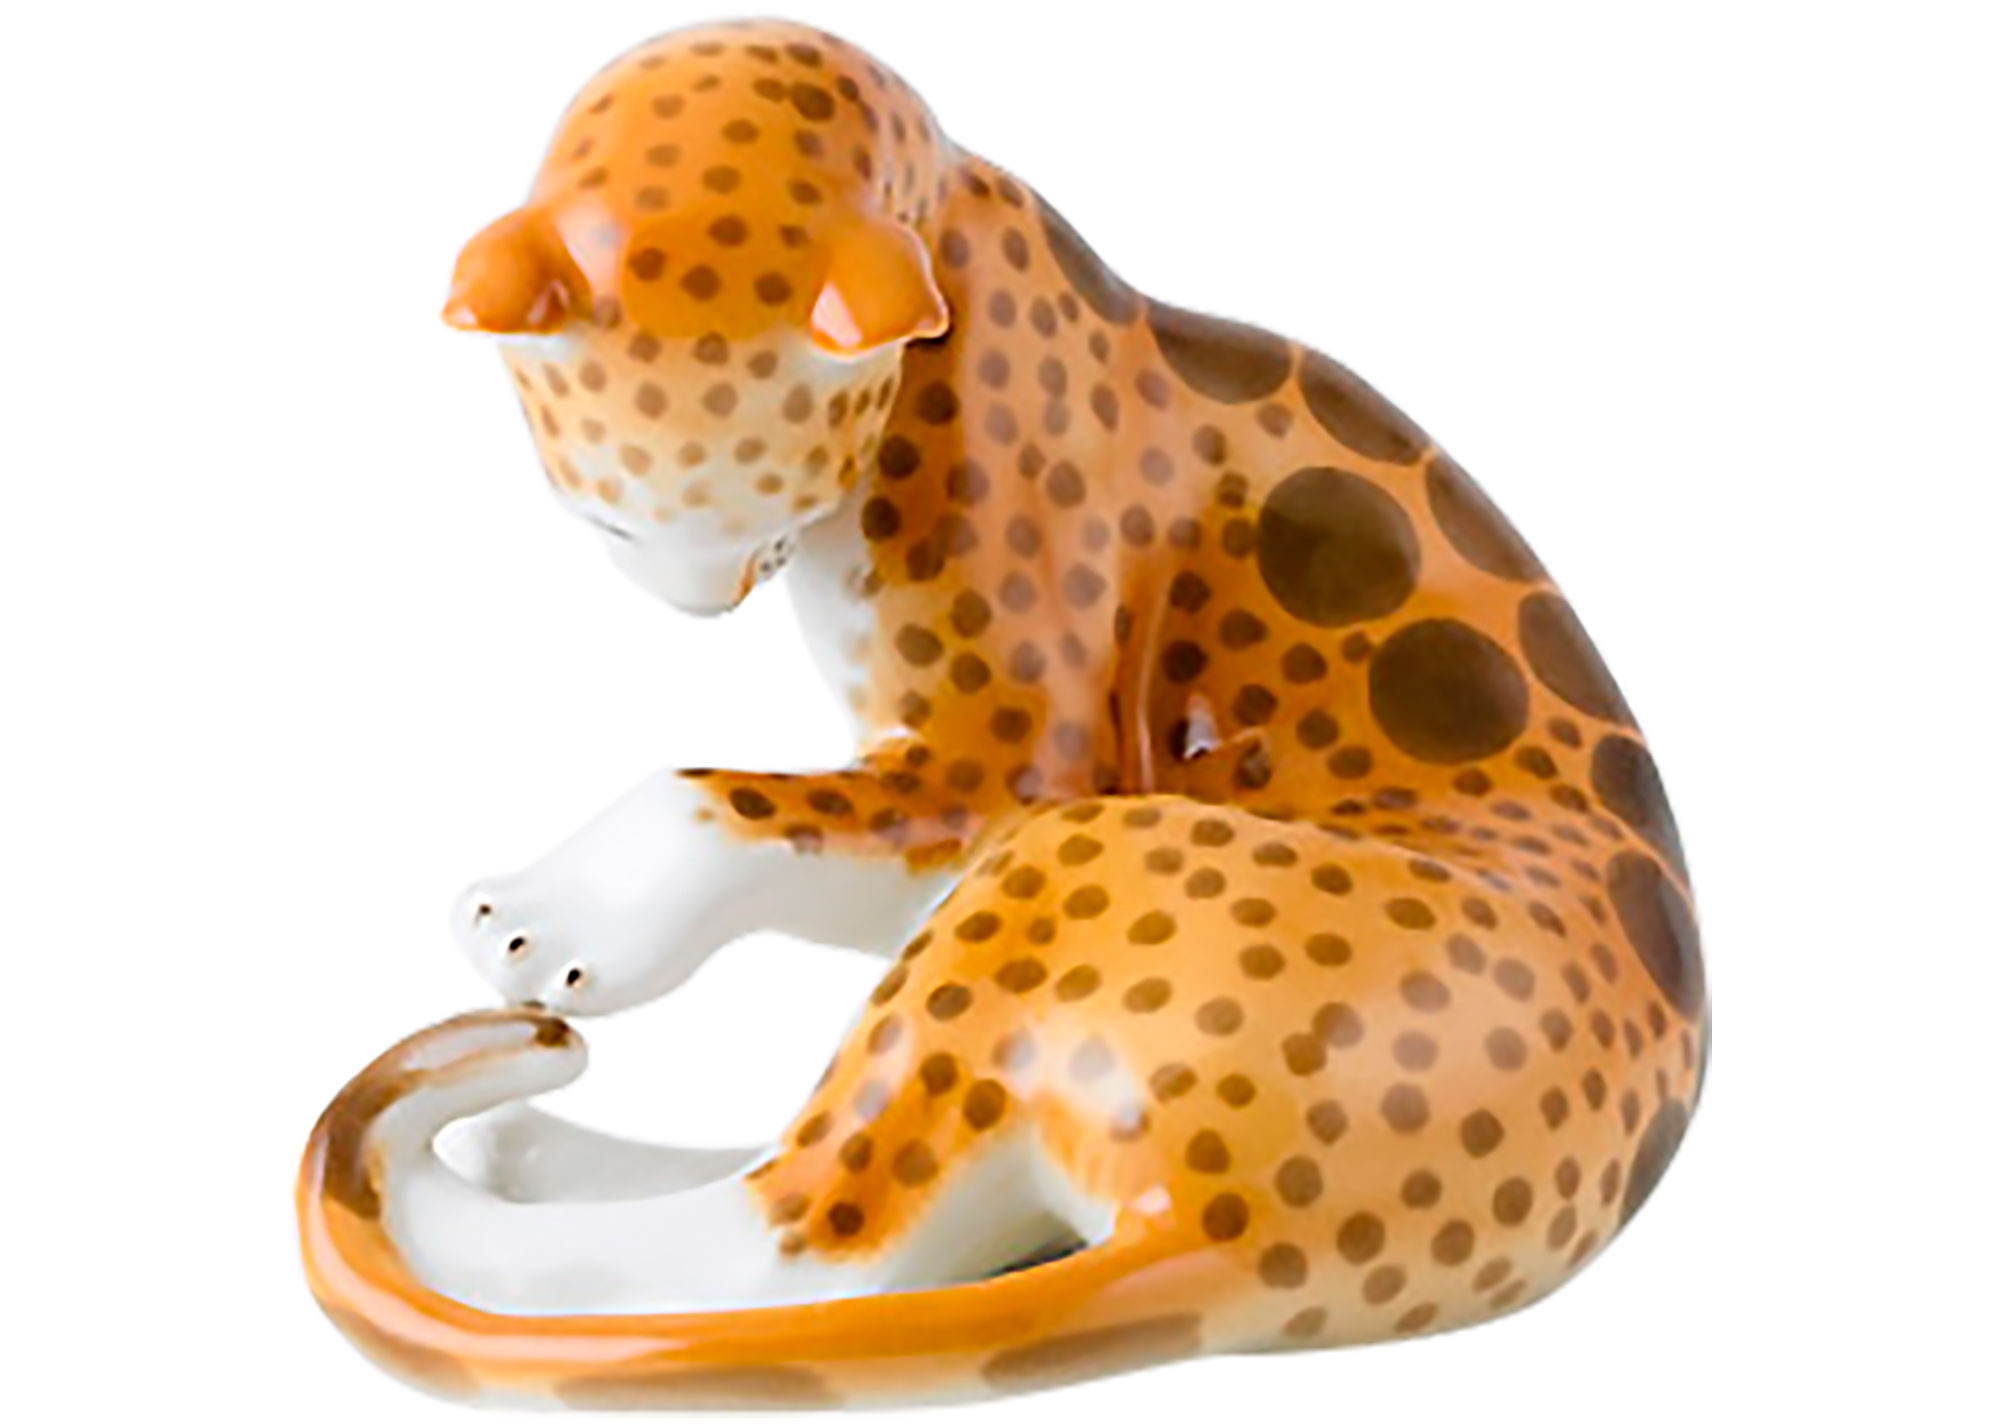 Leopard Figurine